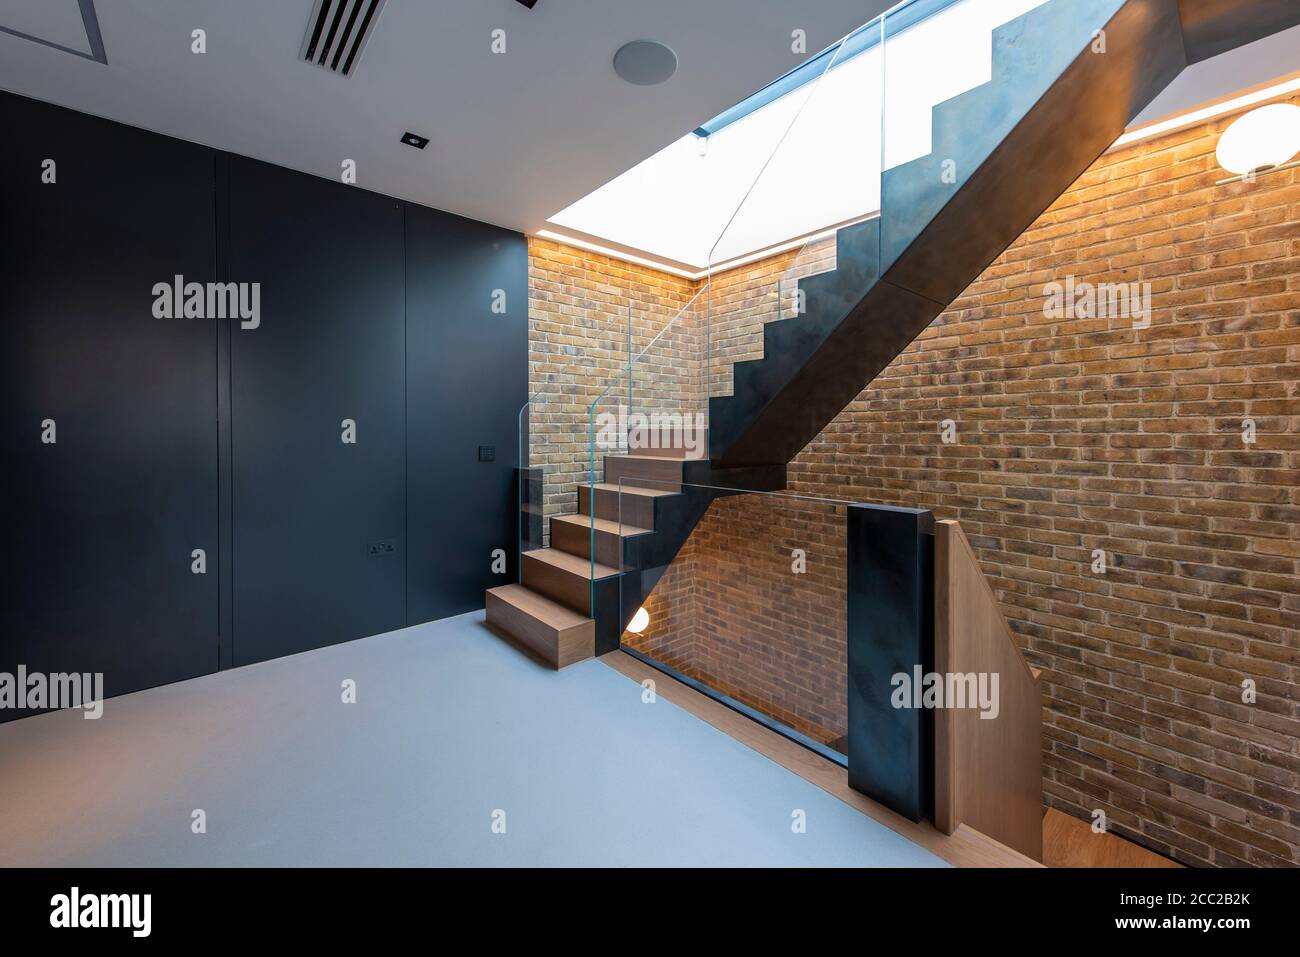 Blick auf die Treppe und den Eingangsbereich. Curtain Road, London, Großbritannien. Architekt: Stiff + Trevillion Architects, 2019. Stockfoto